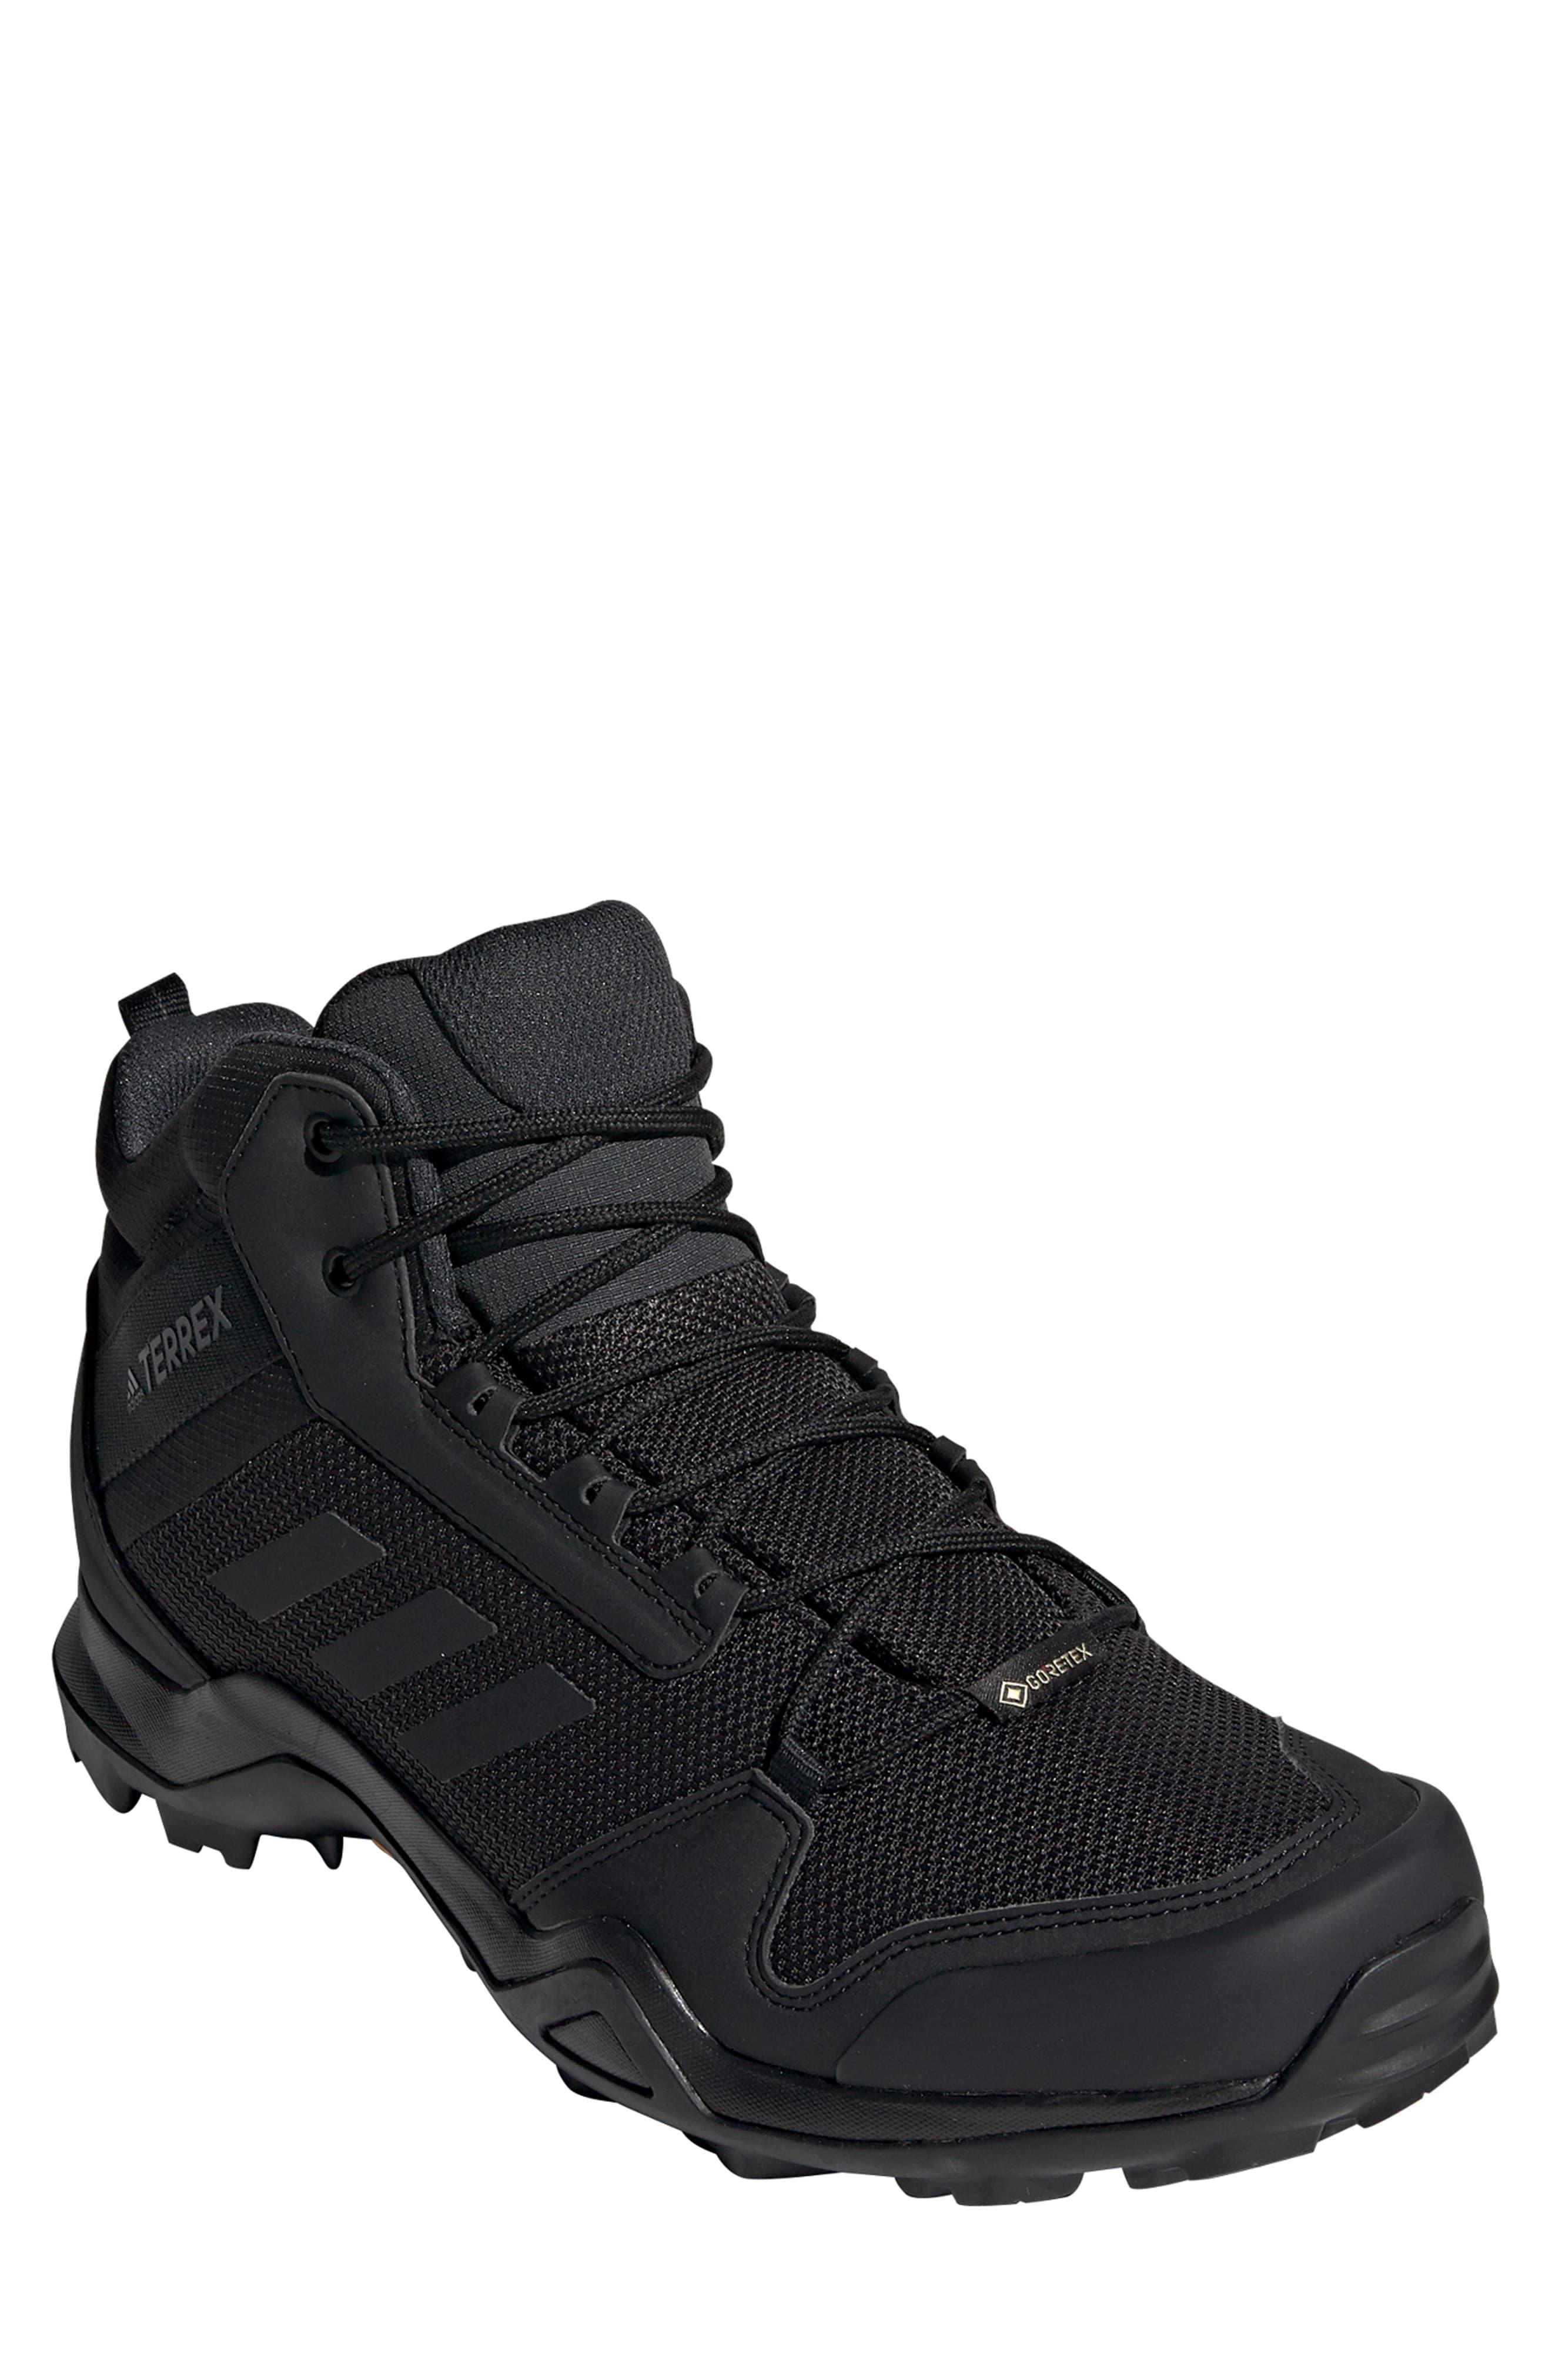 adidas Originals Synthetic Terrex Ax3 Mid Gtx(r) in Black/ Black ...